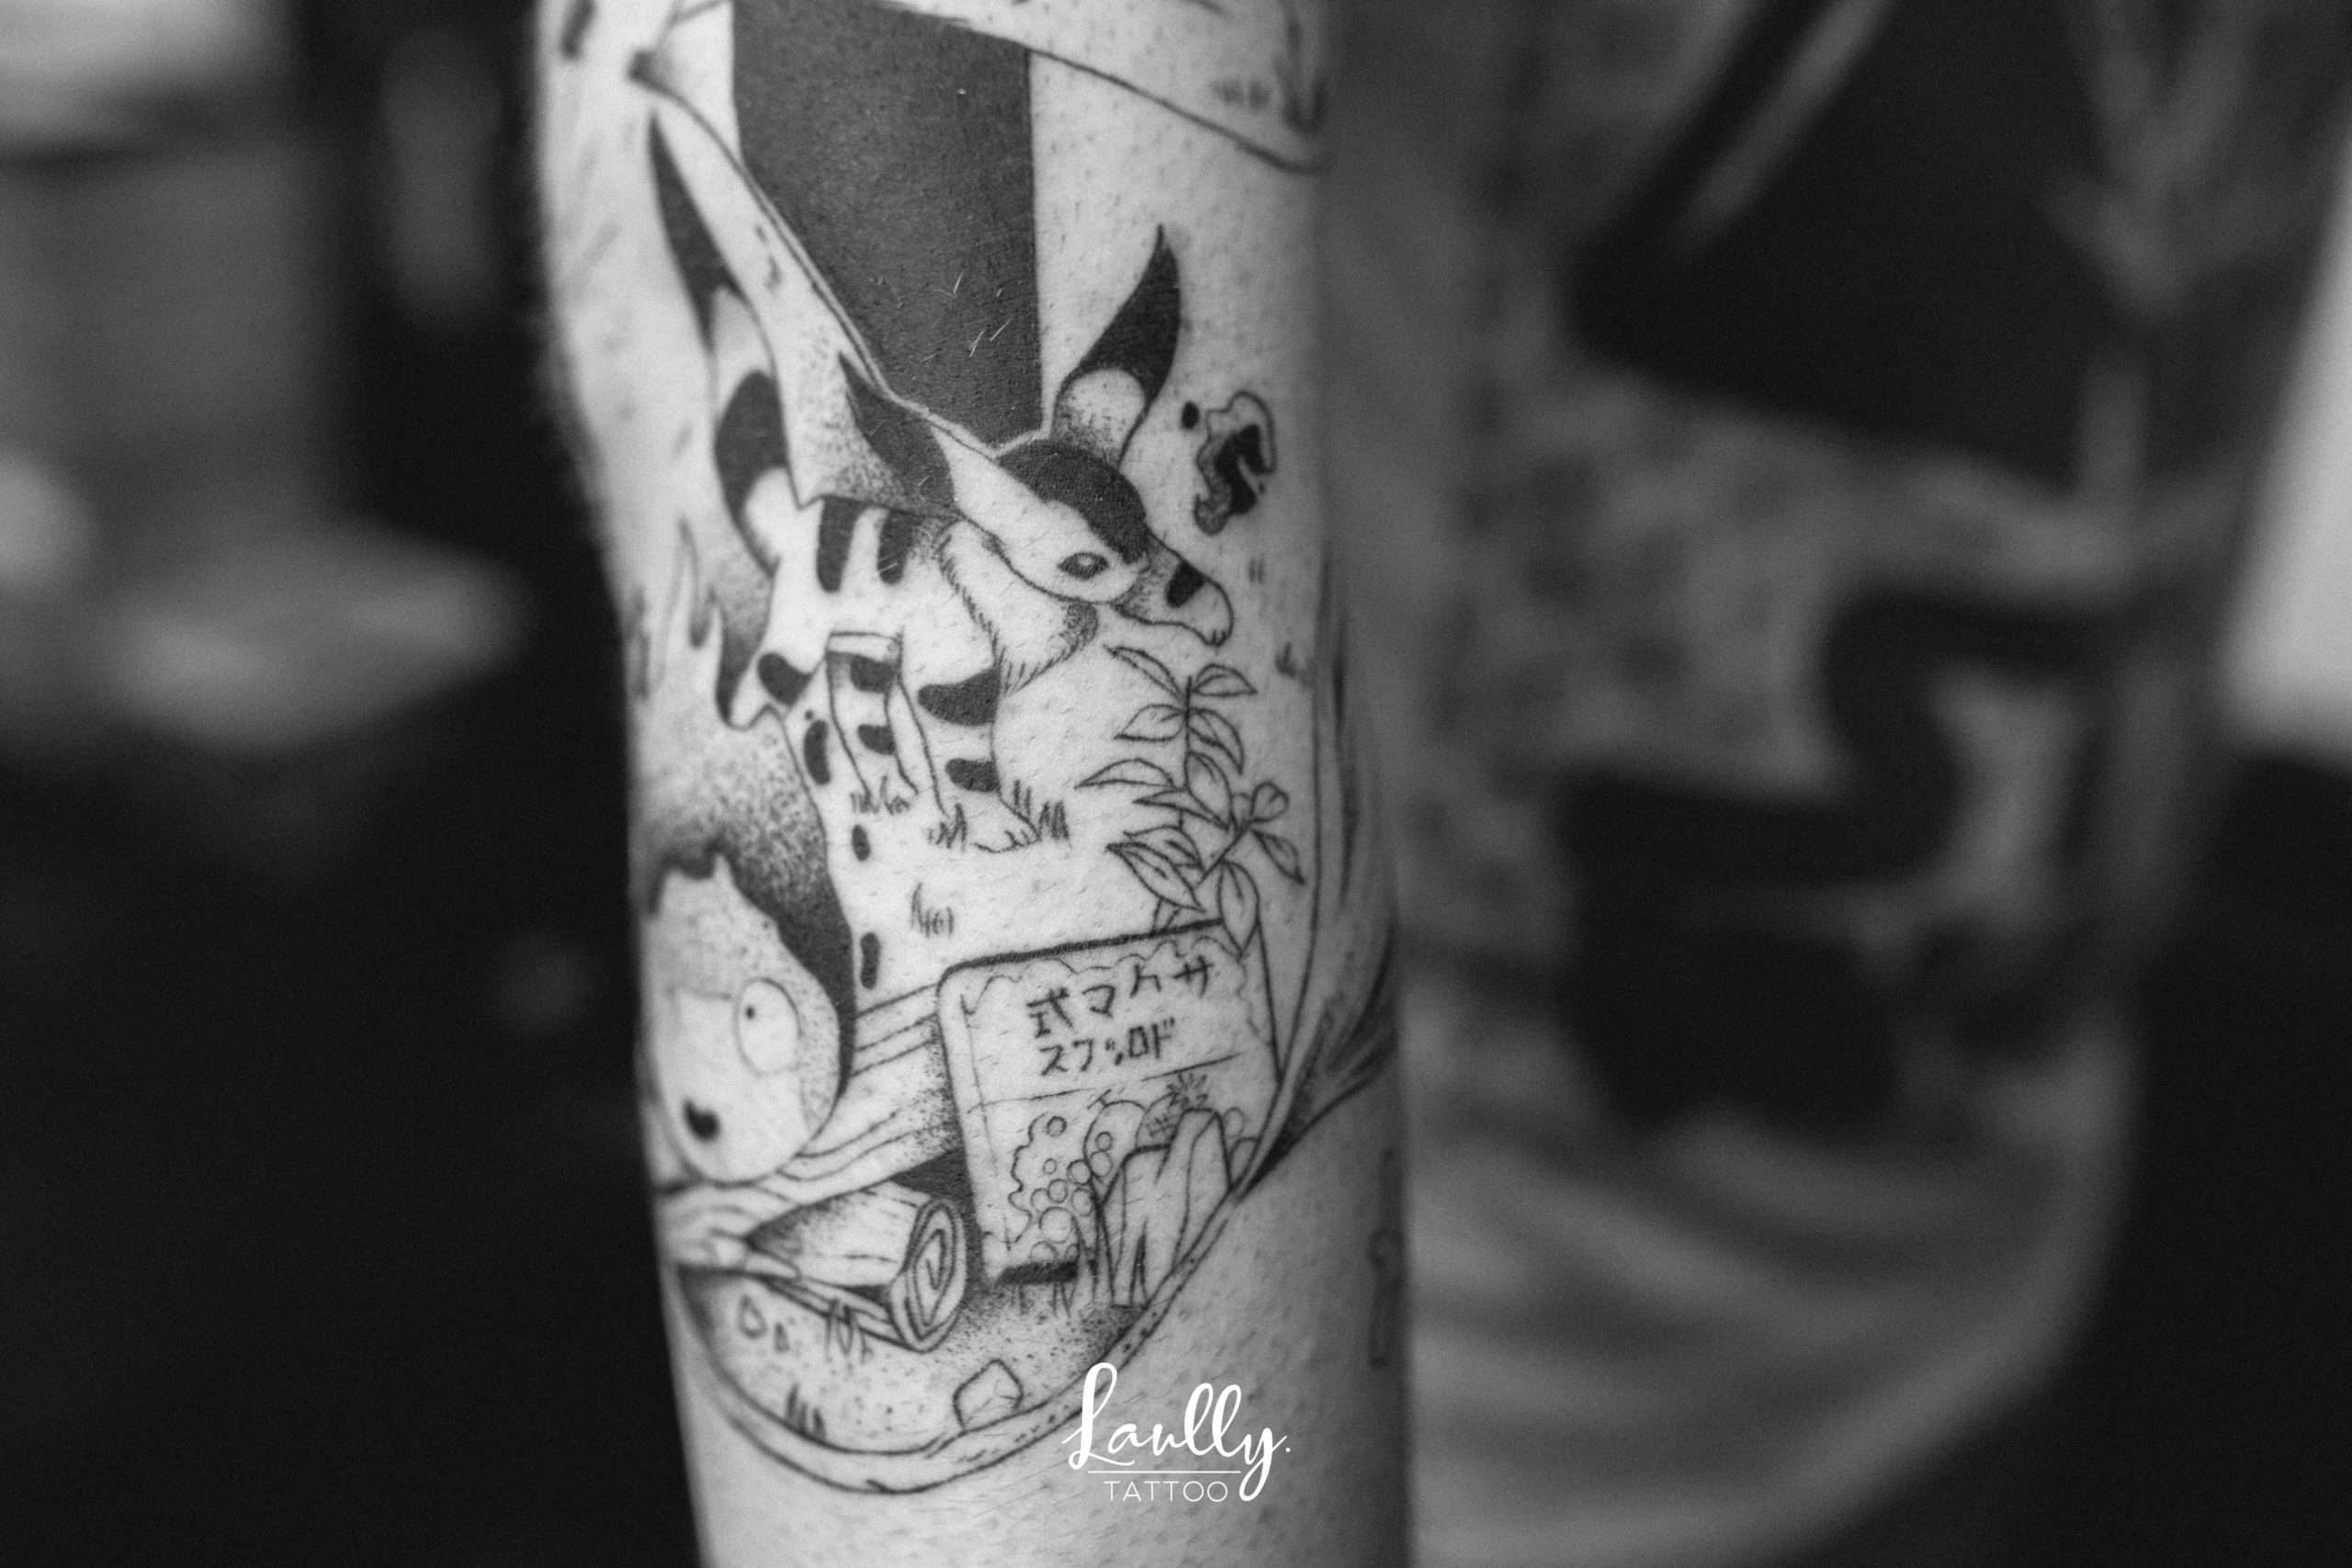 Tattoo à la main de bois sur studio ghibli sur un bras